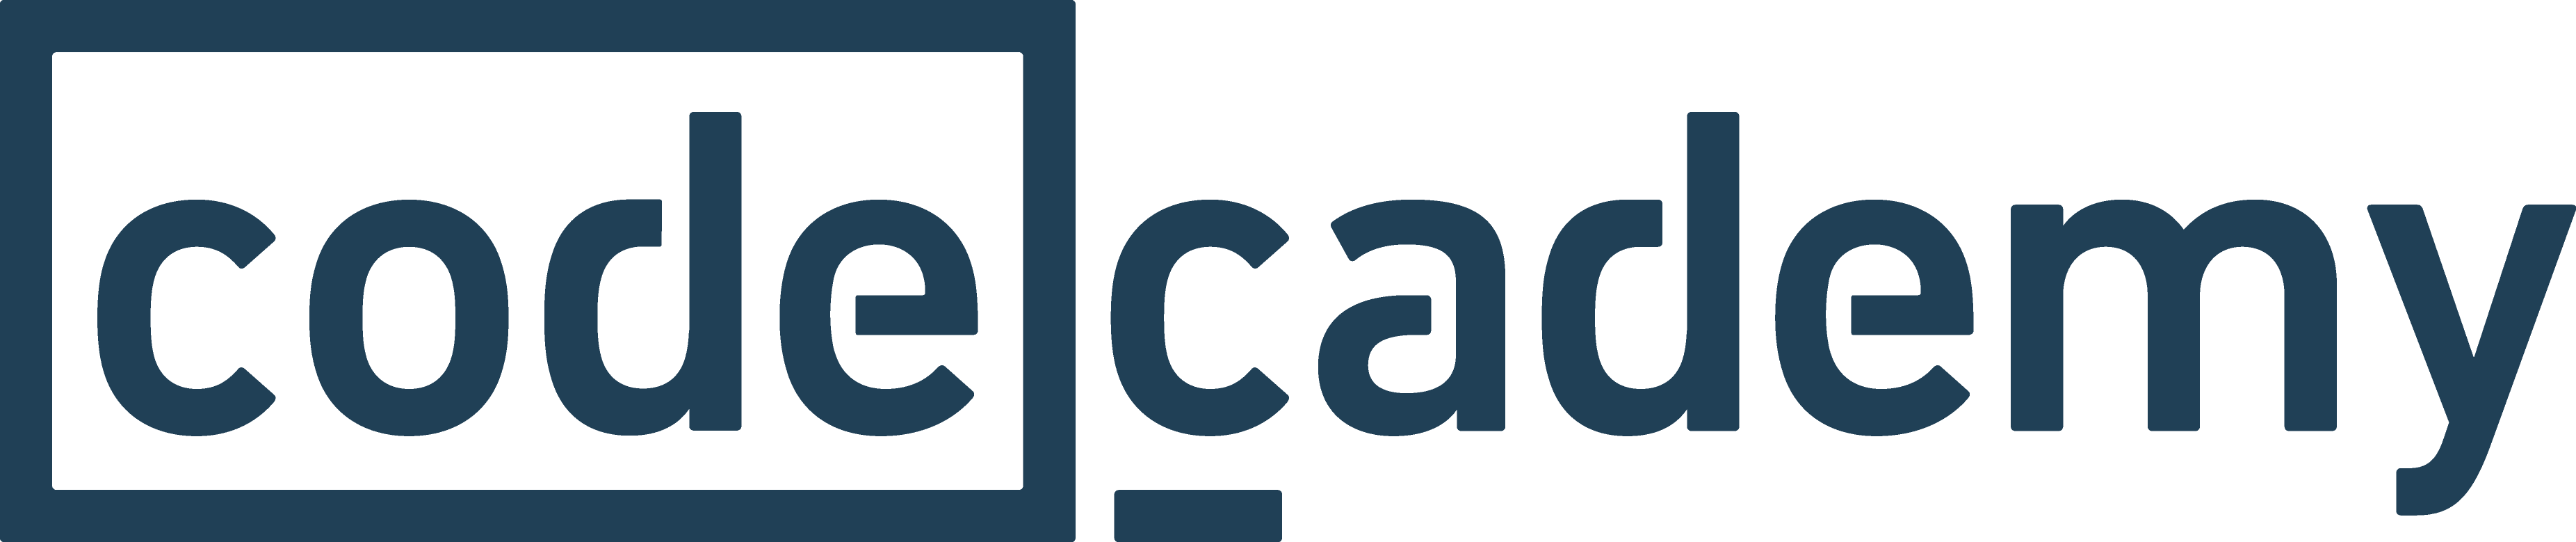 CodeAcademy logo